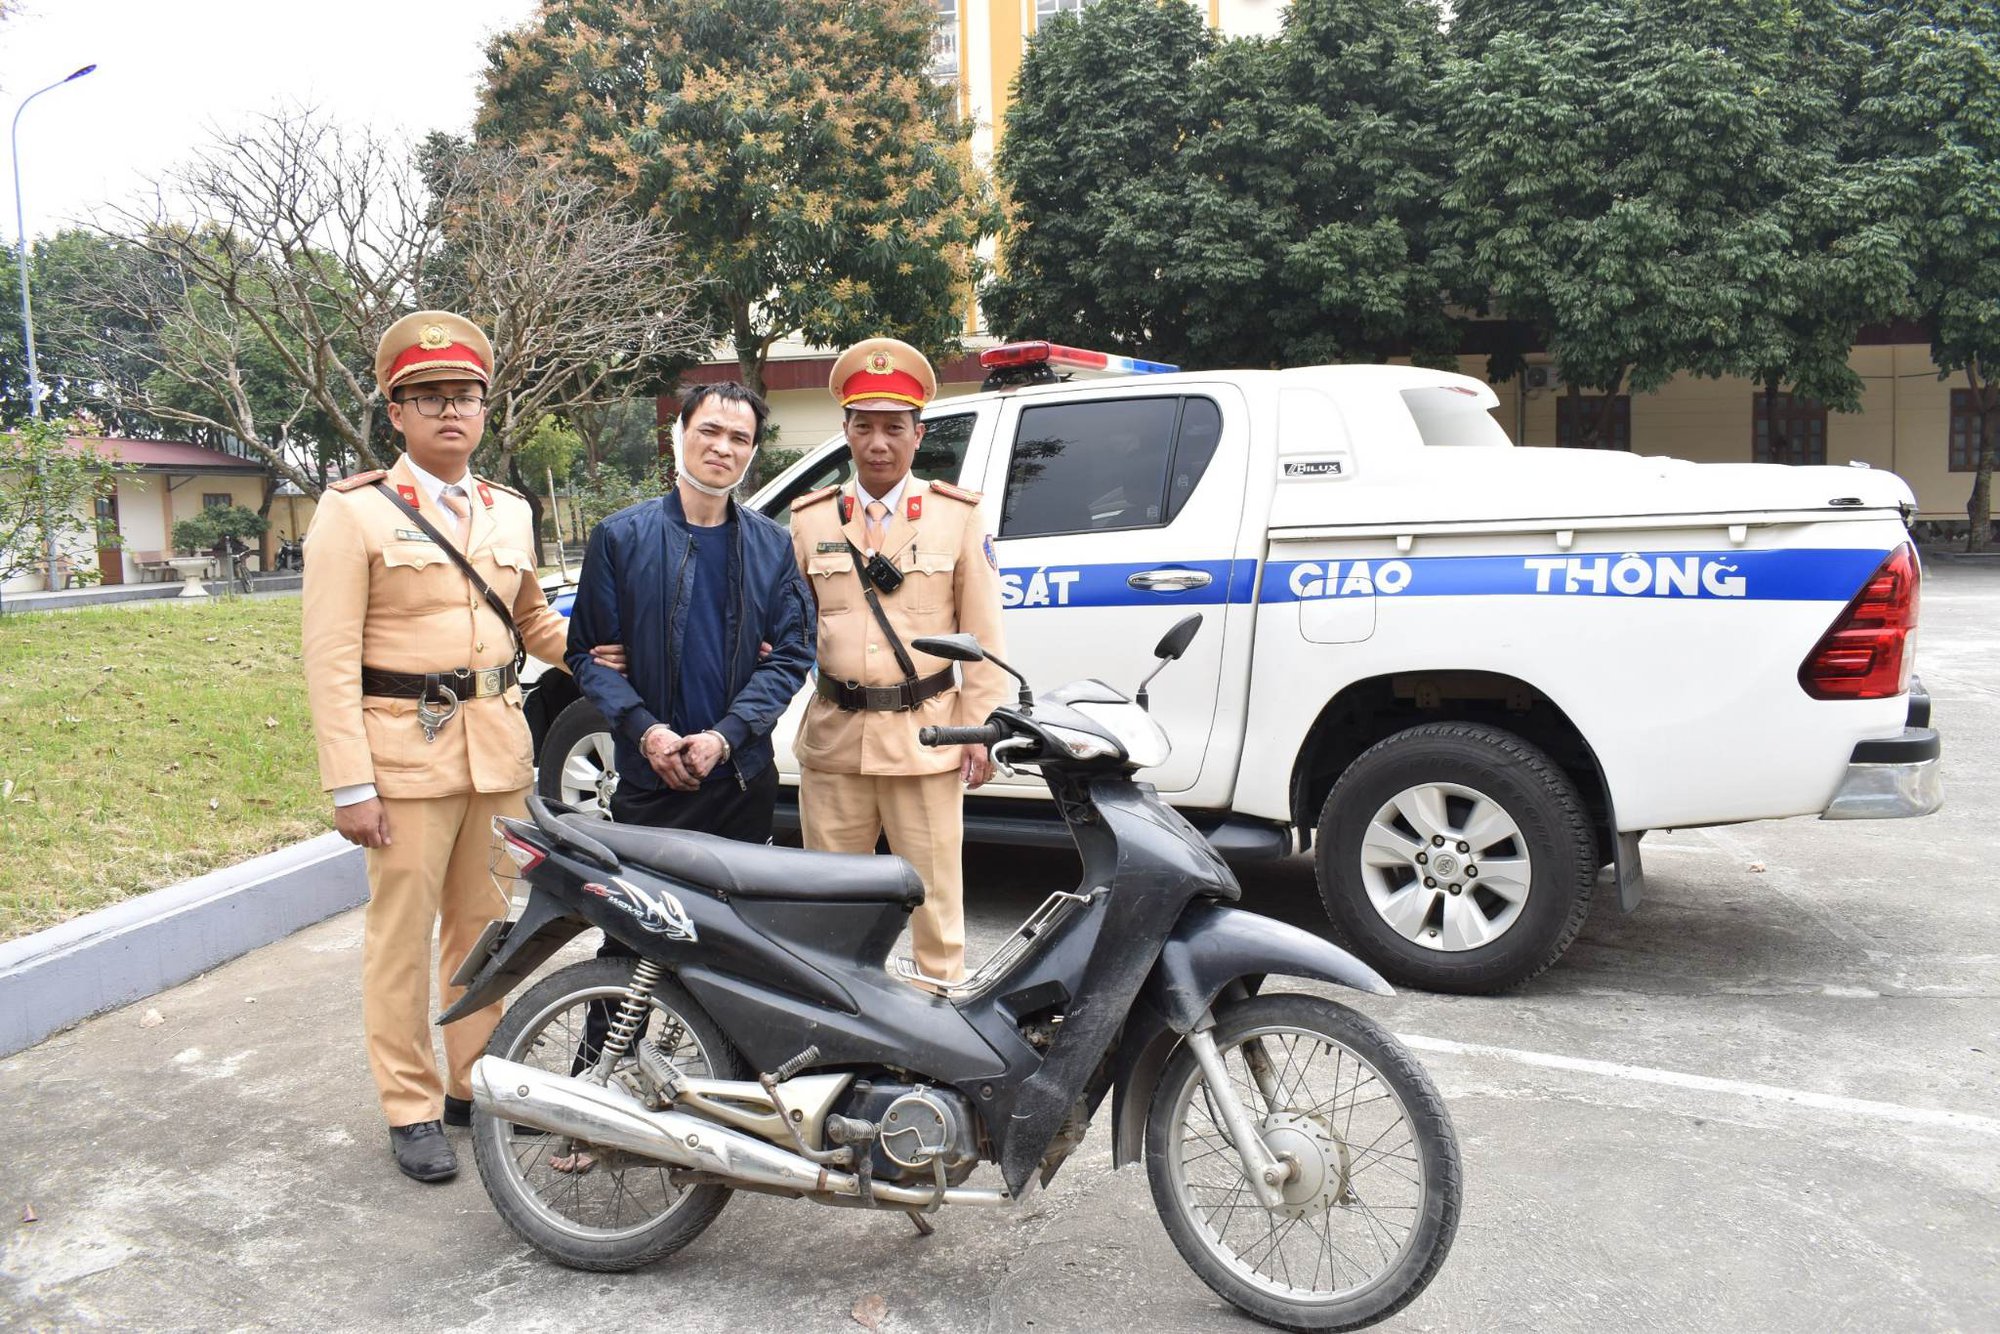 Tuần tra trên tuyến CSGT Ninh Bình bắt đối tượng mới ra tù được 10 ngày cướp giật - Ảnh 1.